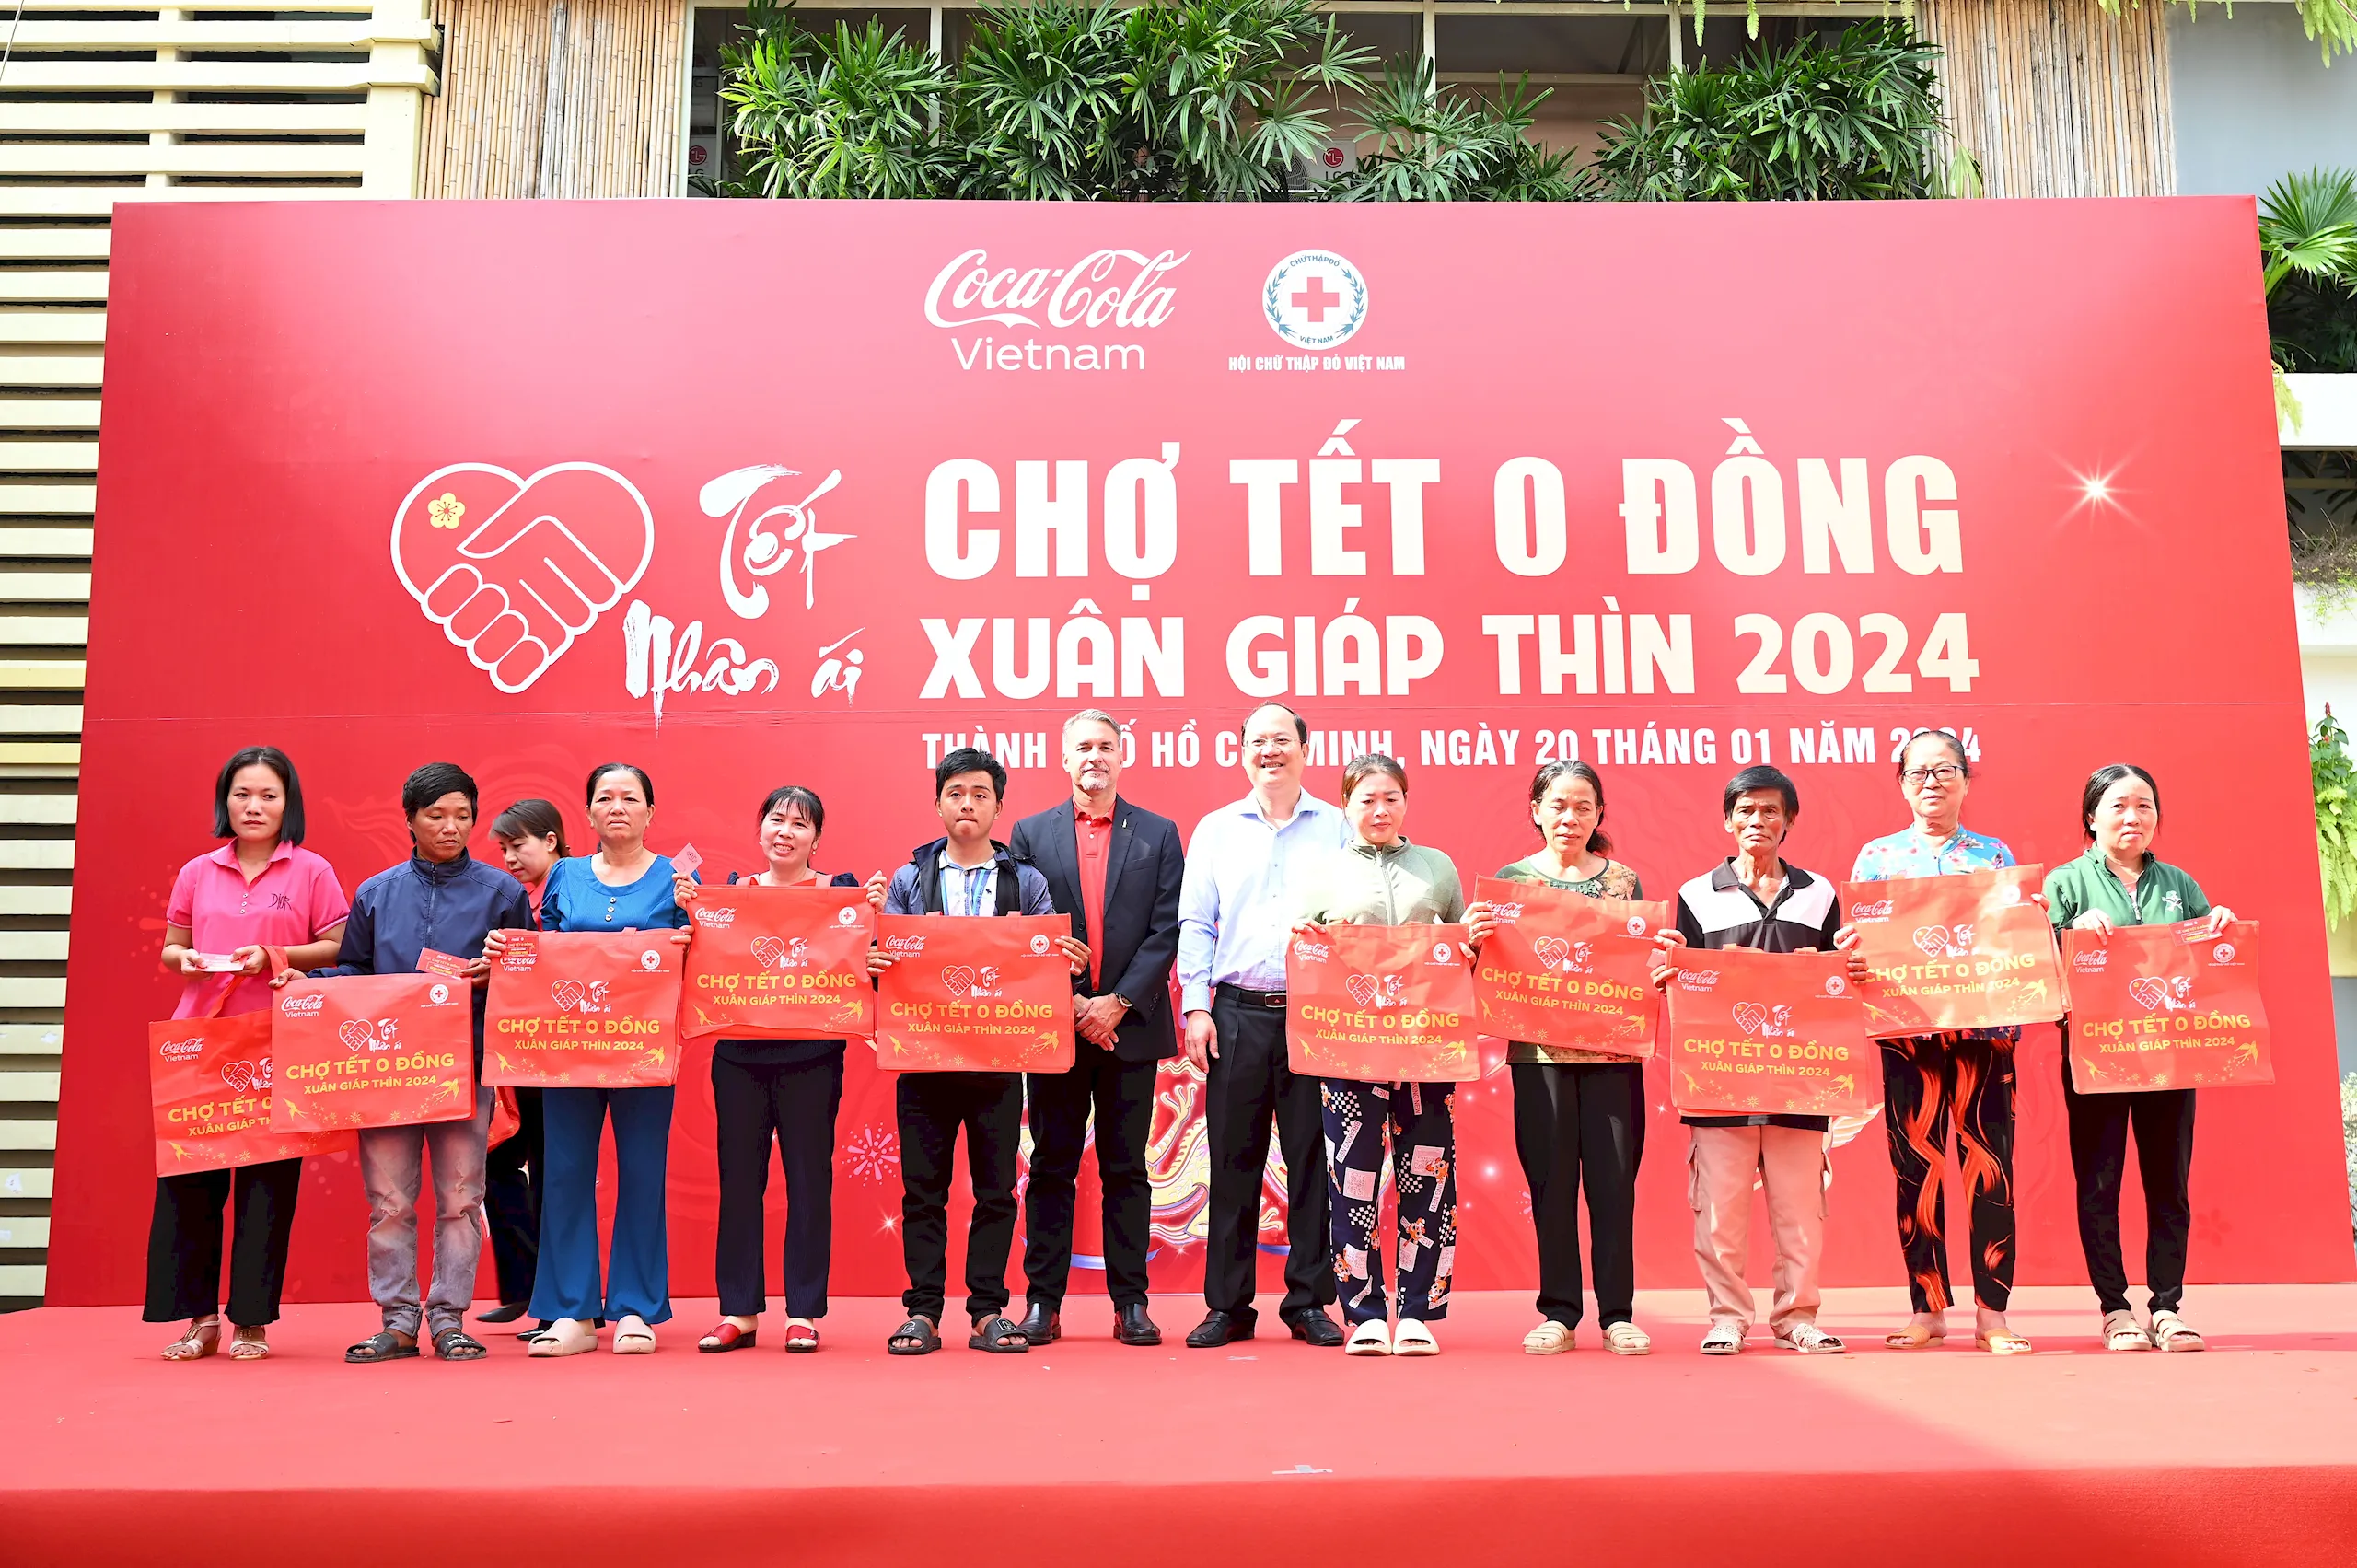 Coca-Cola sum họp 1,000 gia đình Việt đón Tết và gửi ngàn lời chúc vì một Việt Nam thịnh vượng